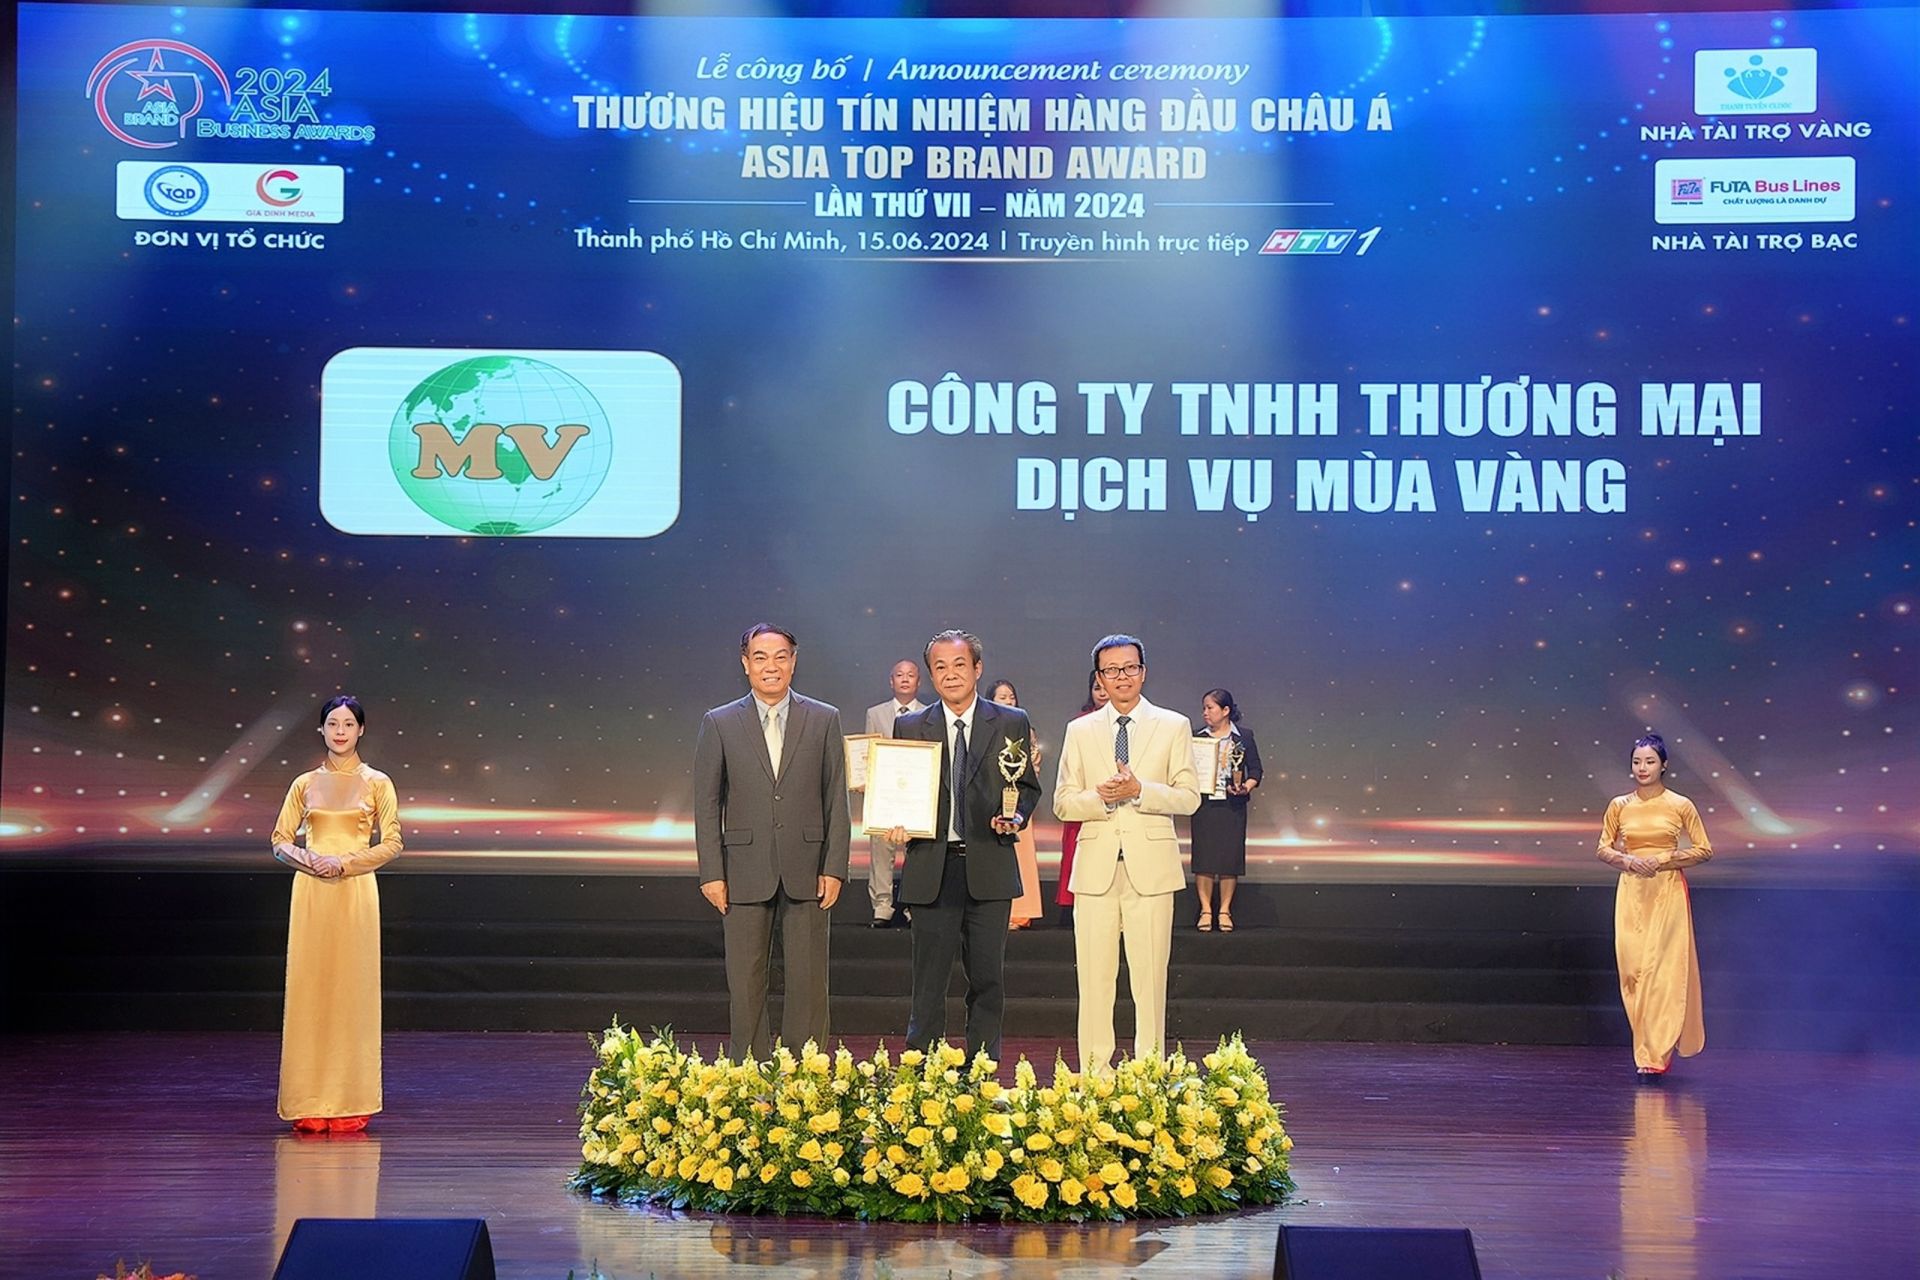 Công ty TNHH Thương mại Dịch vụ Mùa Vàng xuất sắc nhận giải thưởng “Top 10 - Thương hiệu Tín nhiệm hàng đầu châu Á”